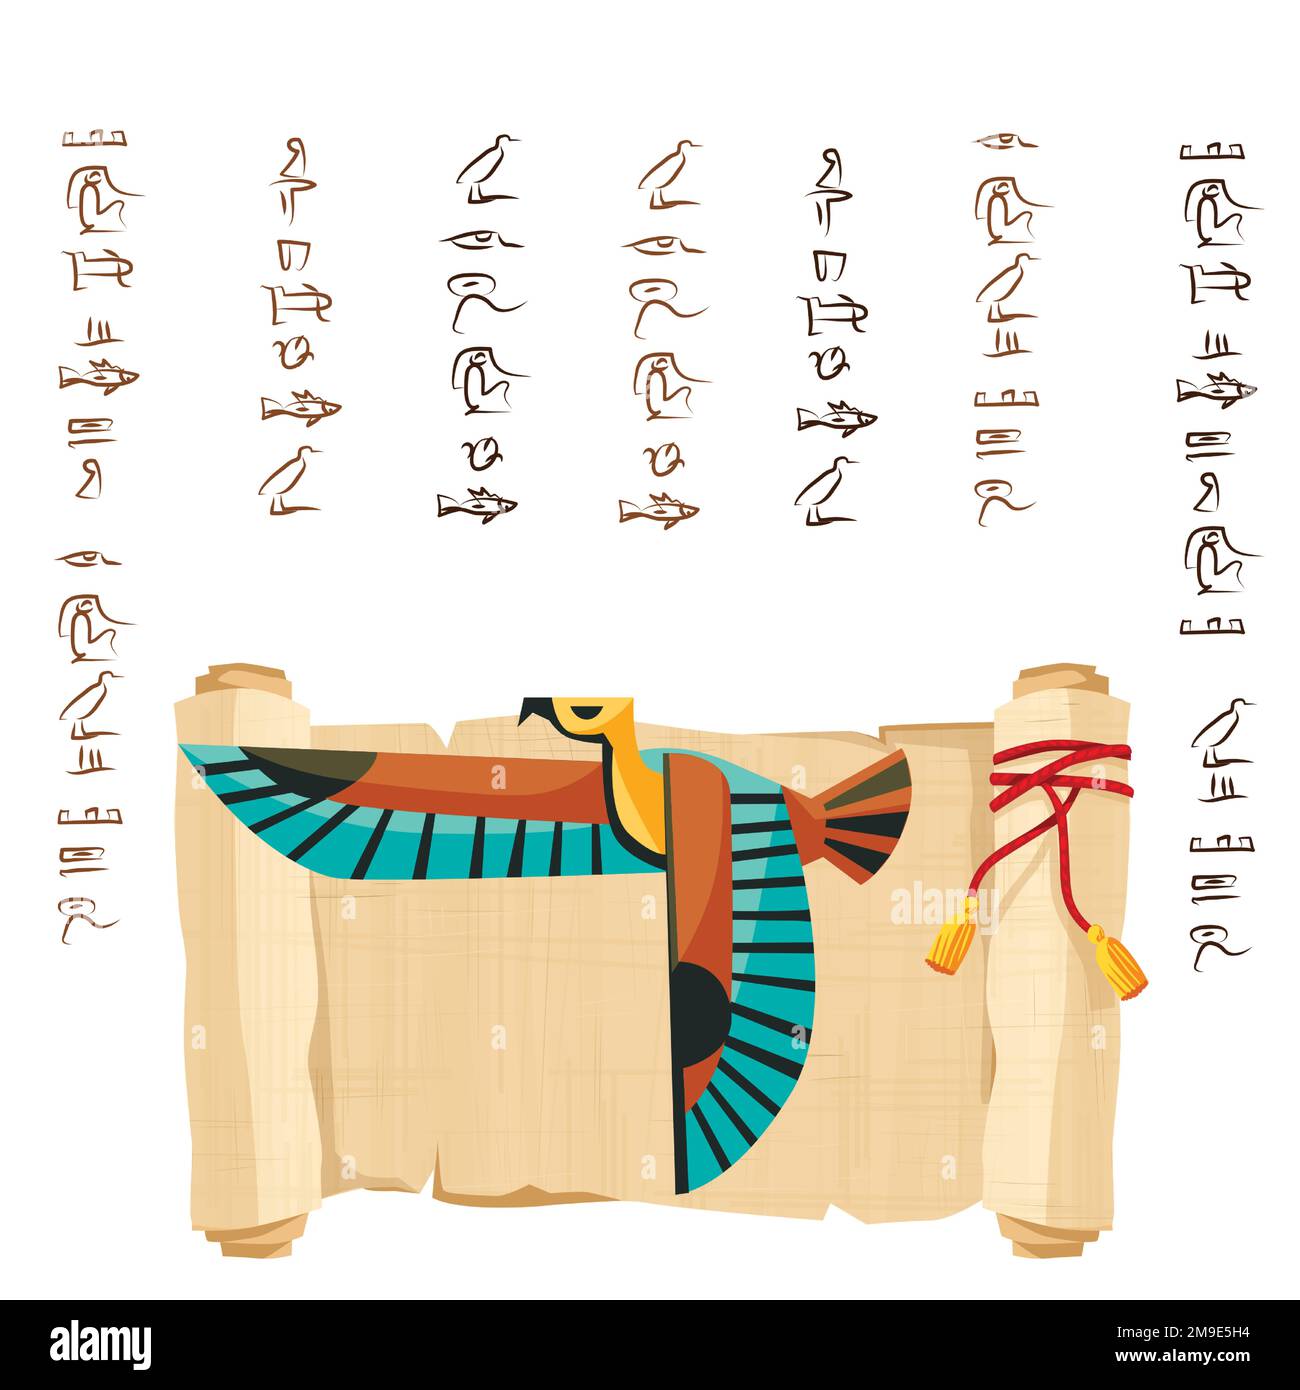 Alte ägyptische Papyrus-Schriftrolle dekoriert mit roter Kordel-Cartoon-Vektorgrafik. Ägyptisches Kultursymbol, leeres, entfaltetes antikes Papier, fliegender Falke und Hieroglyphen, isoliert auf Weiß Stock Vektor